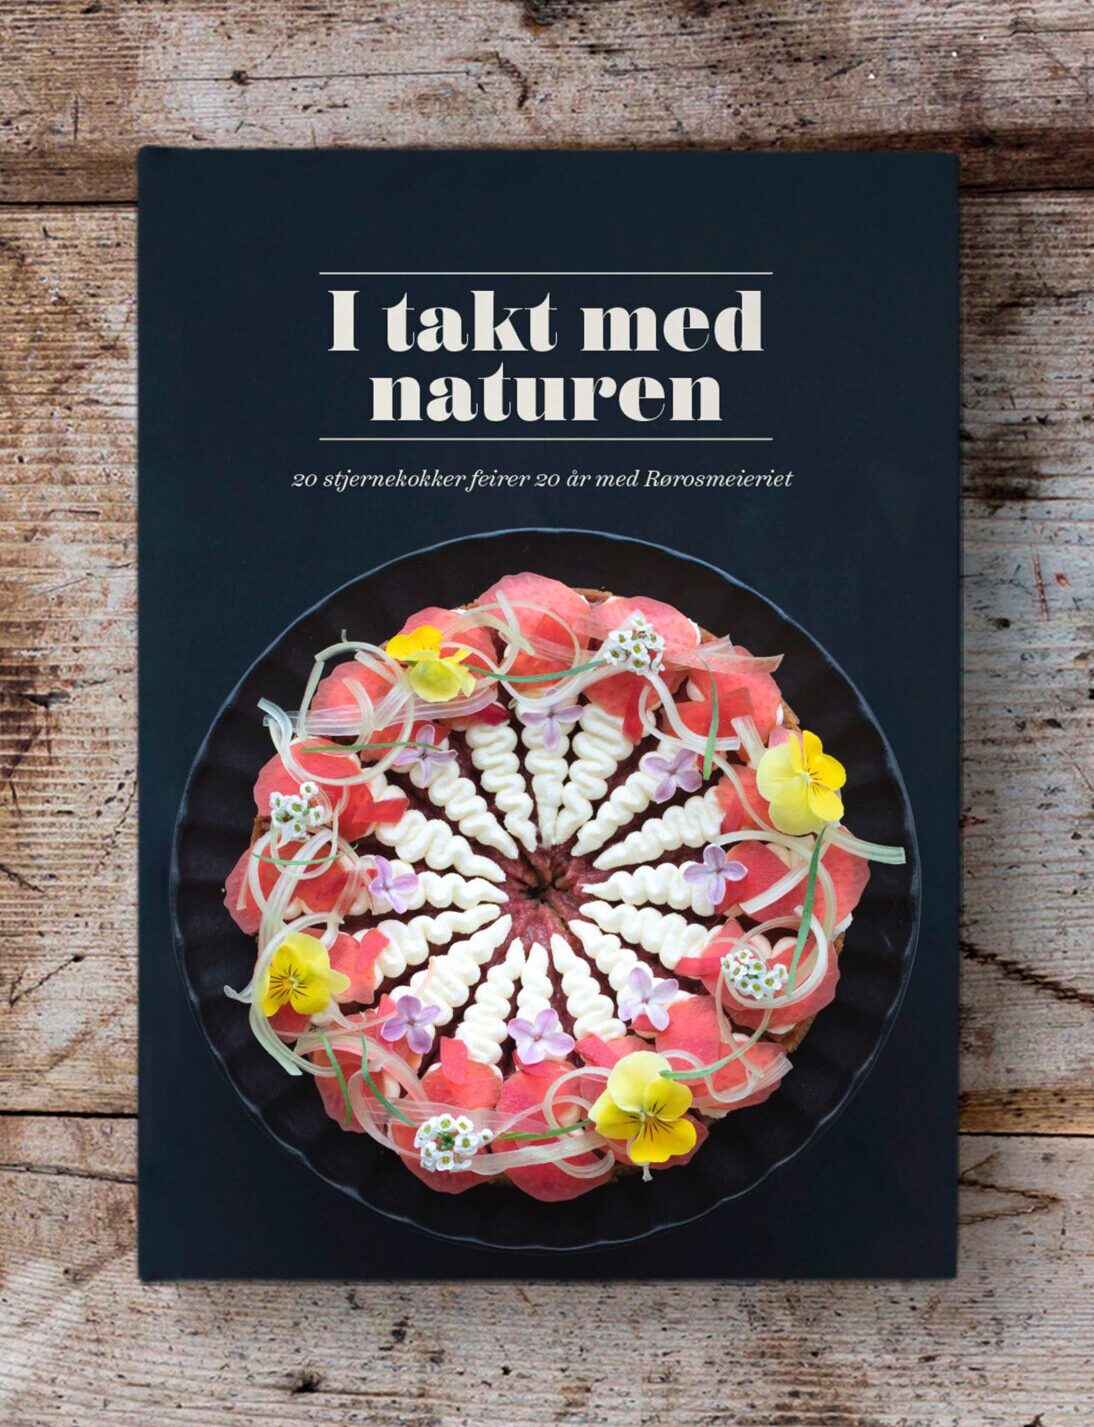 En kokebok med fokus på norske råvarer tradisjon og kvalitet